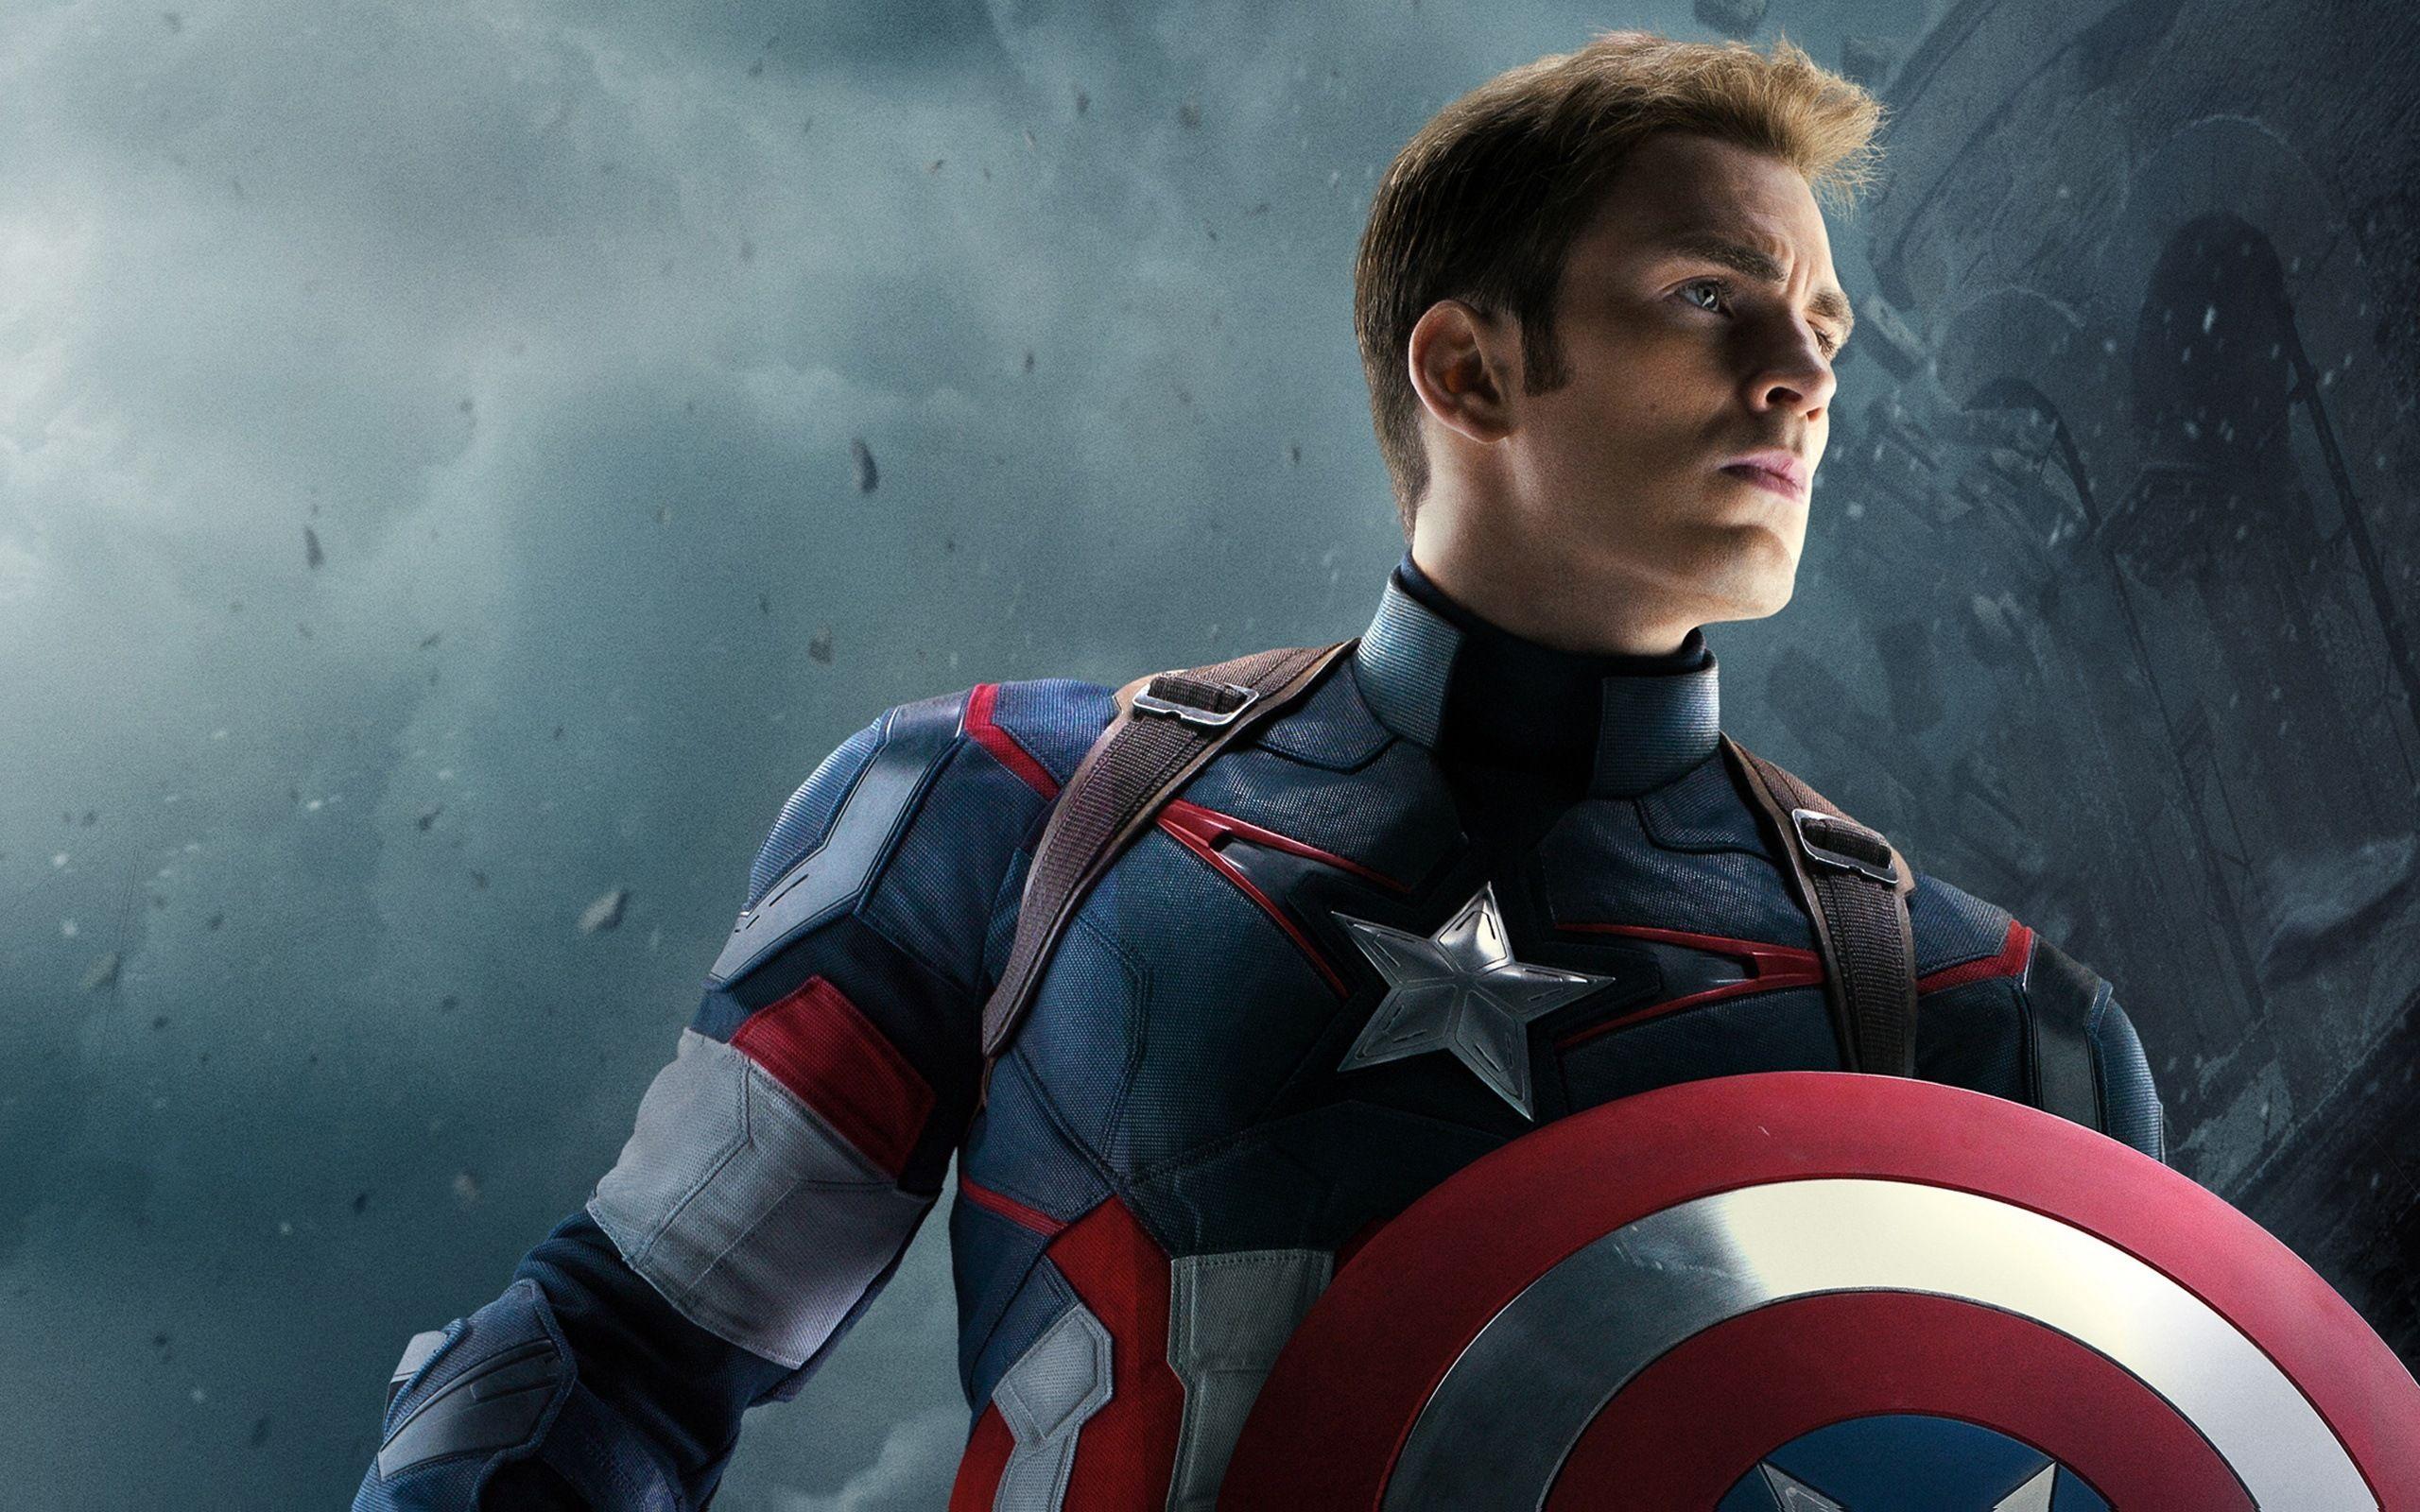 Chris Evans Captain America Shield 4K Ultra HD Mobile Wallpaper